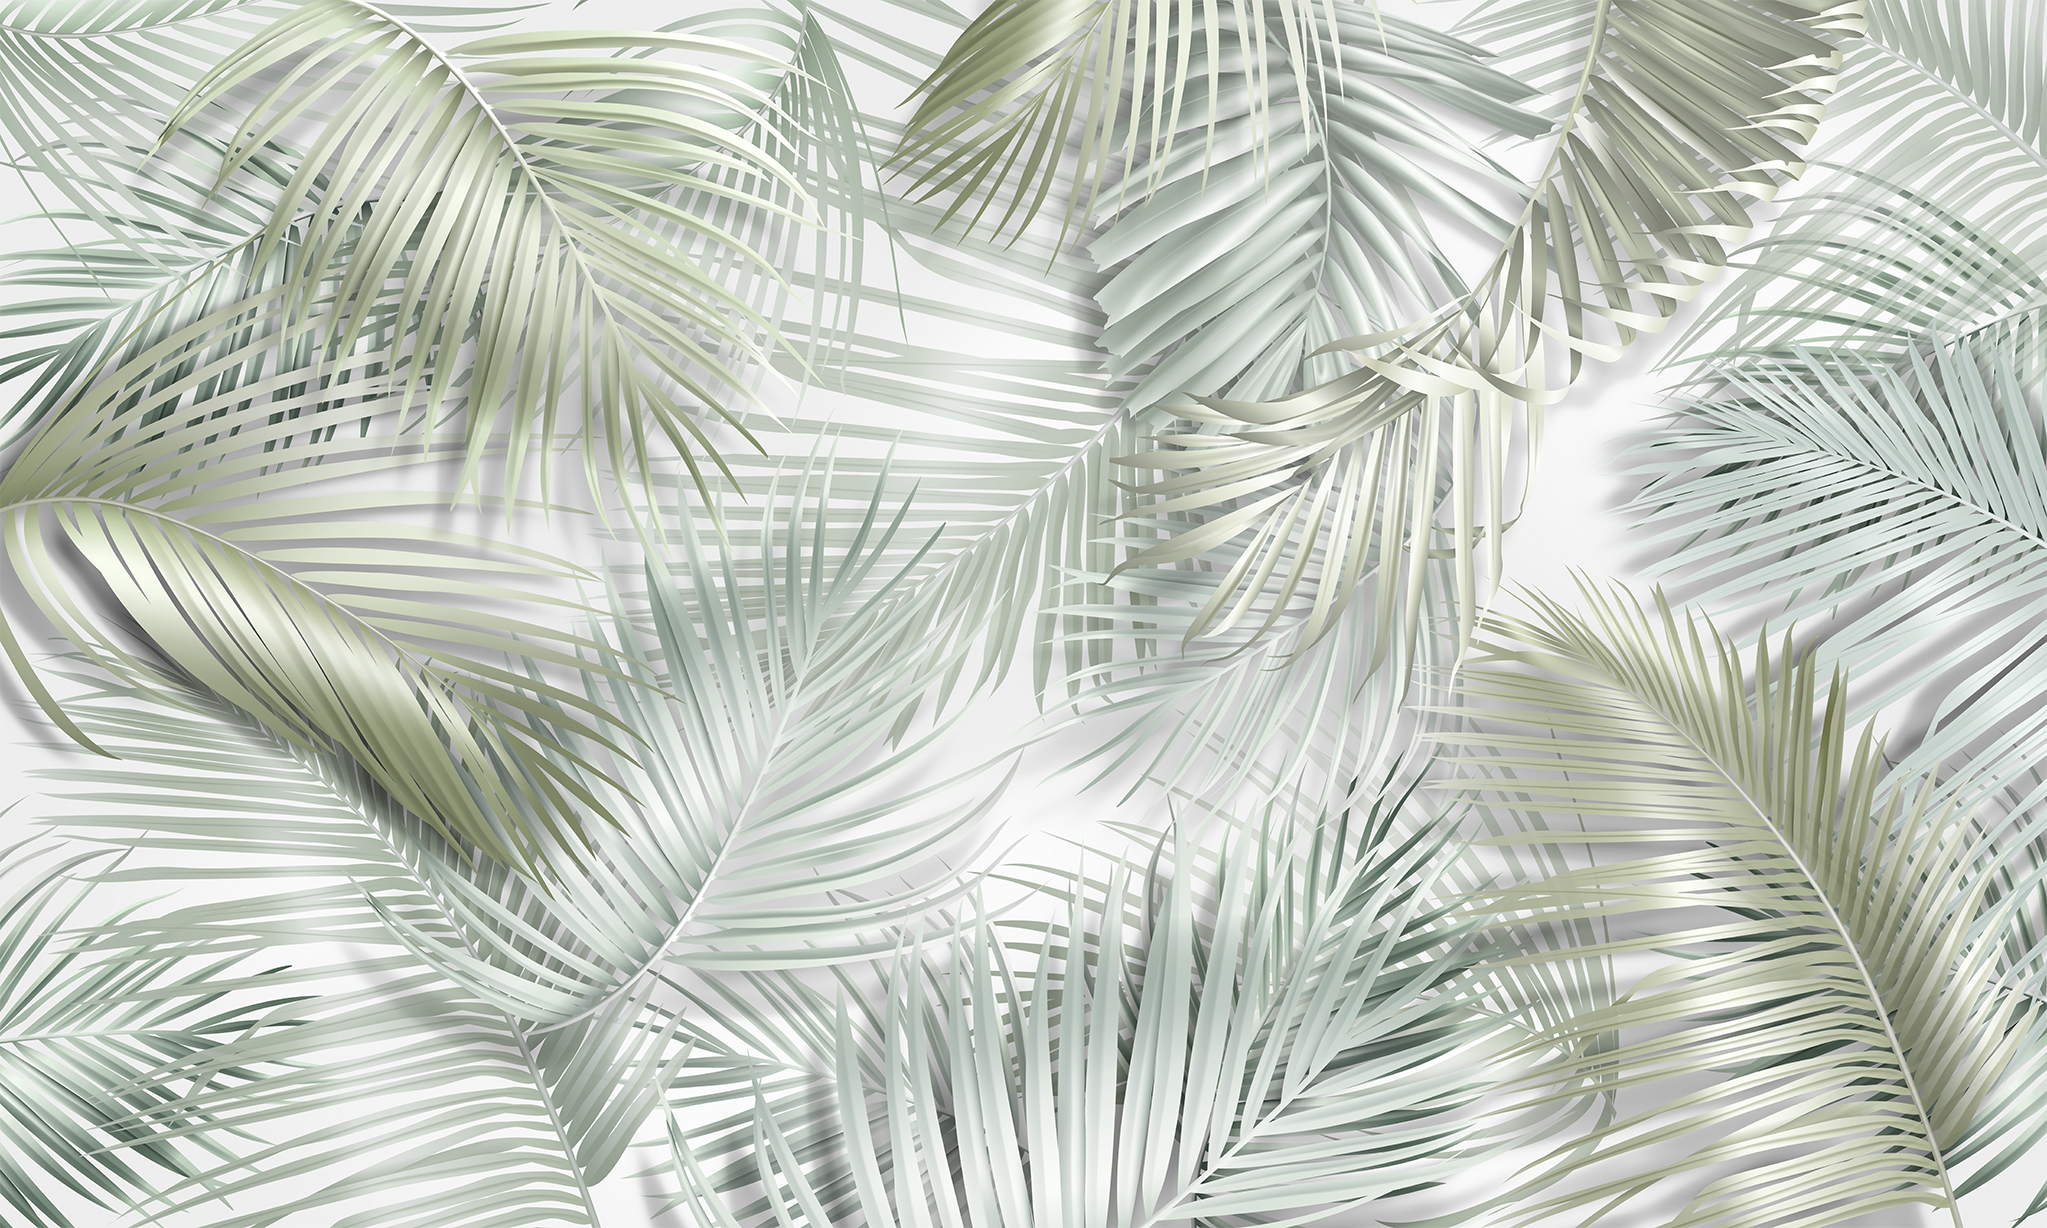  Пальмовые листья на светлом фоне  на стену — Цены и 3D .